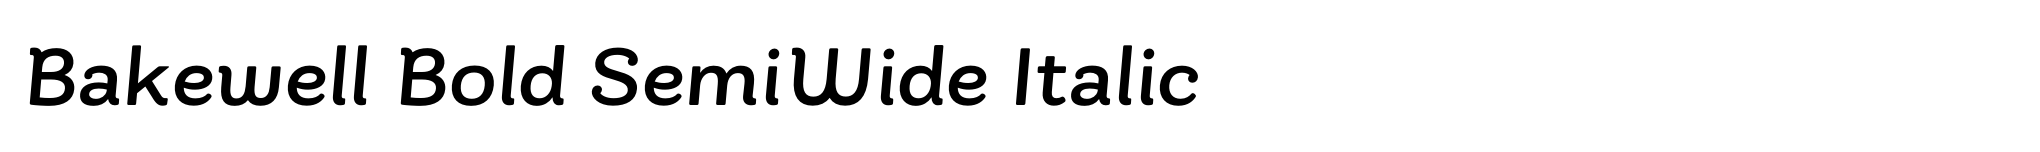 Bakewell Bold SemiWide Italic image